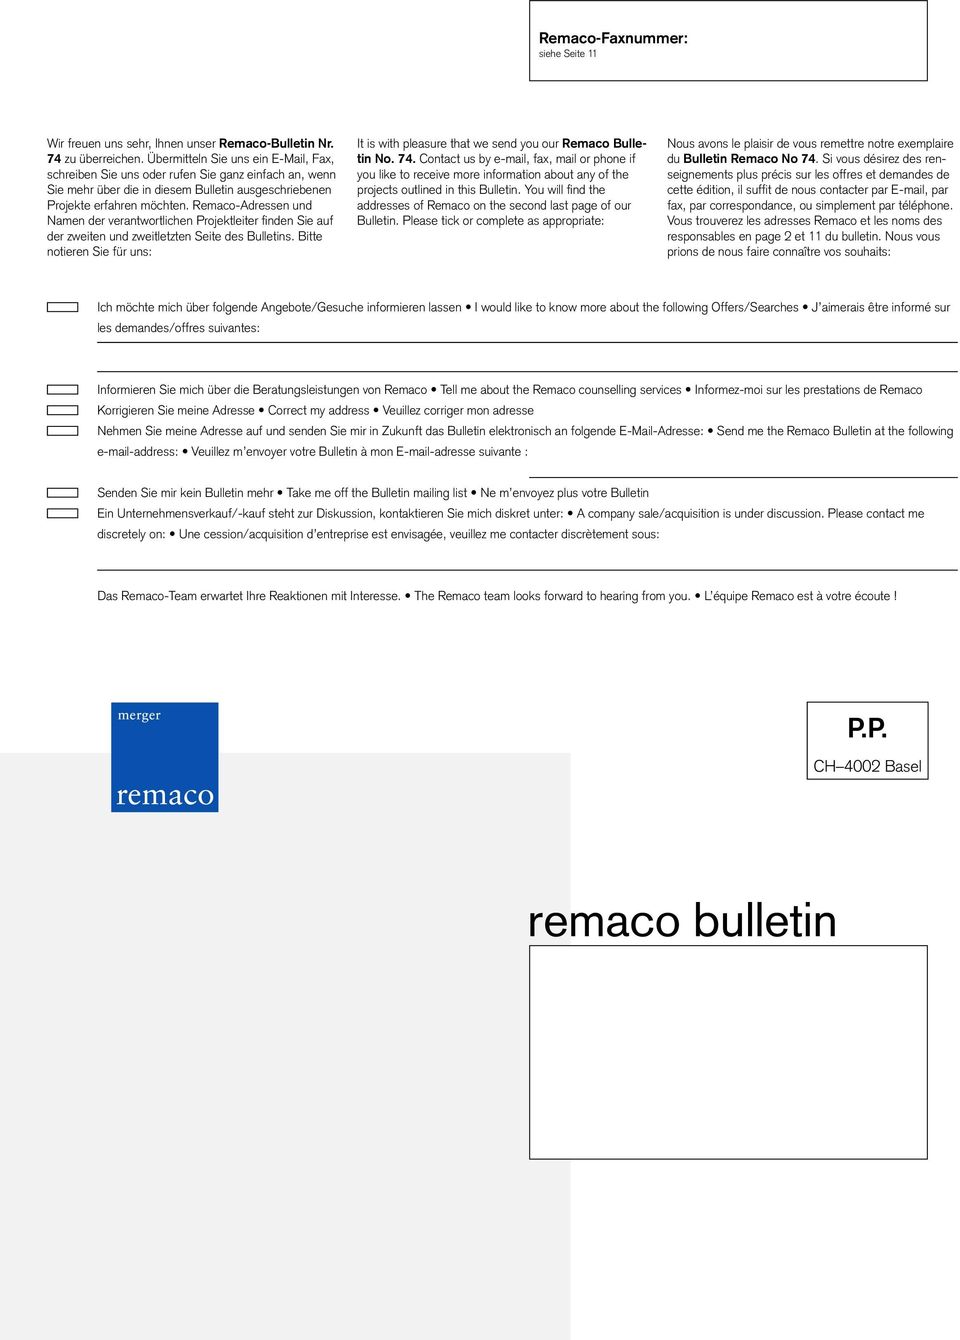 Remaco-Adressen und Namen der verantwortlichen Projektleiter finden Sie auf der zweiten und zweitletzten Seite des Bulletins.